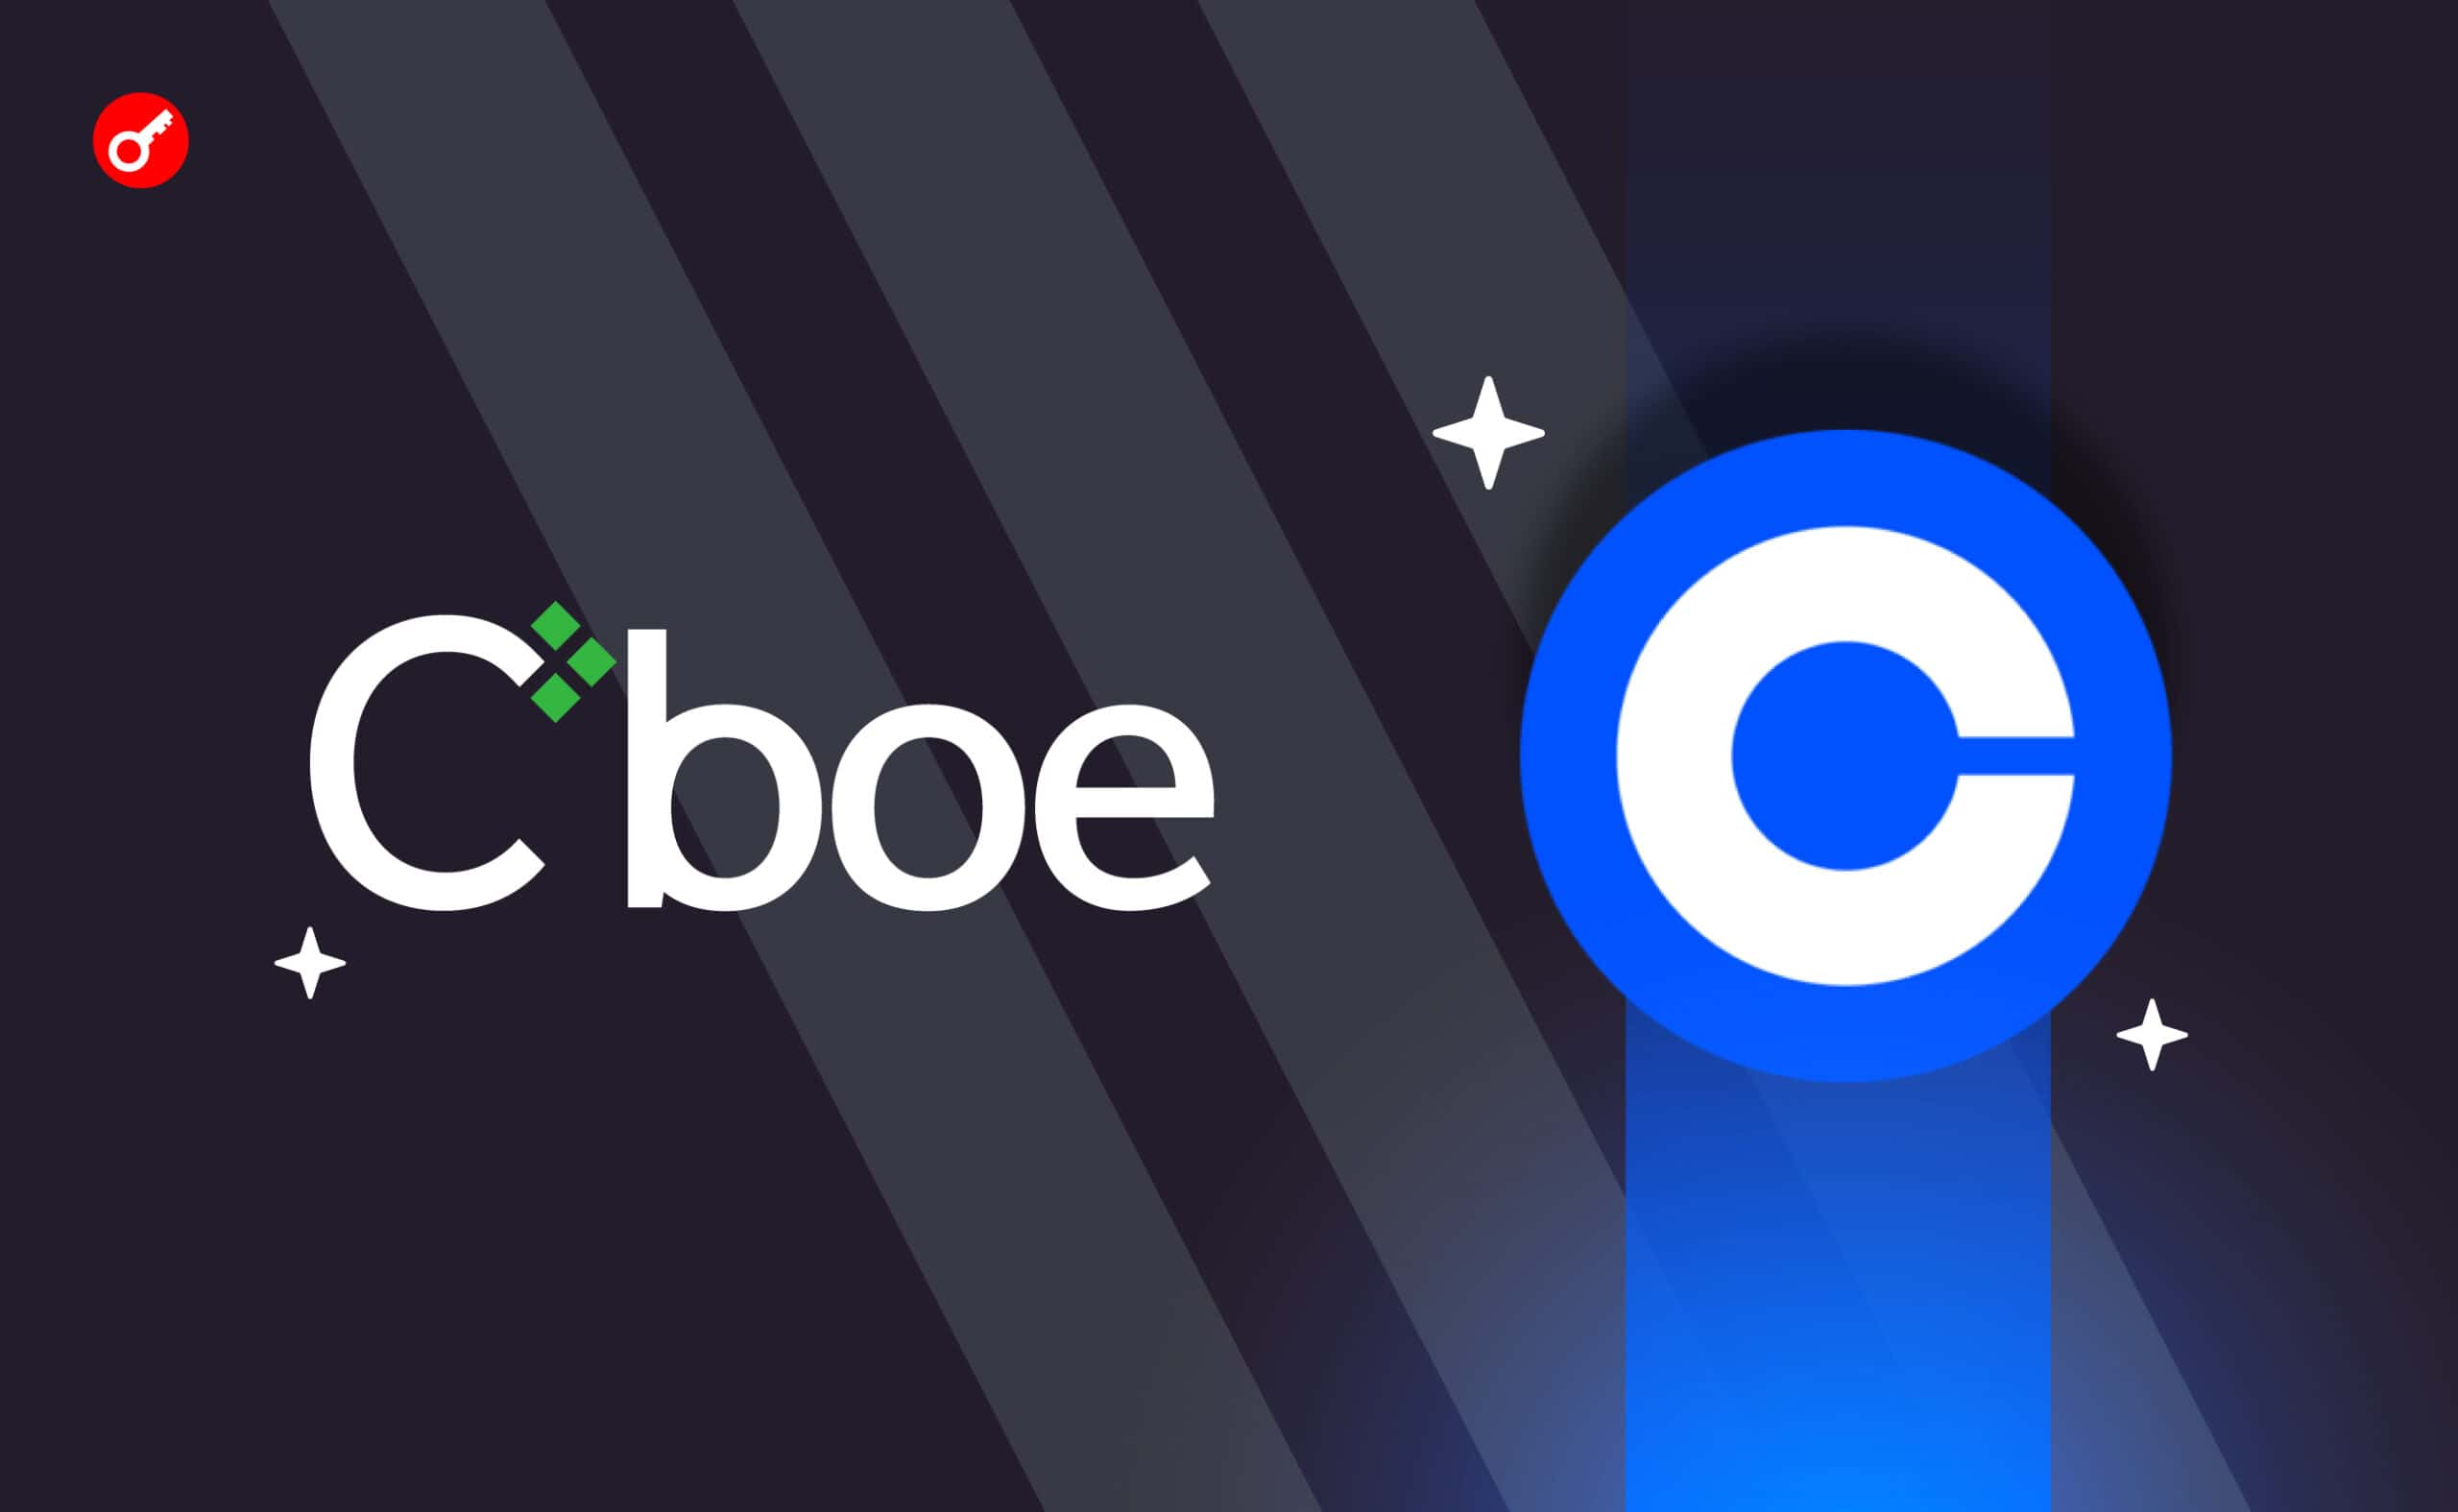 Cboe заключила соглашение с Coinbase и повторно подала заявки на пять спотовых биткоин-ETF. Заглавный коллаж новости.